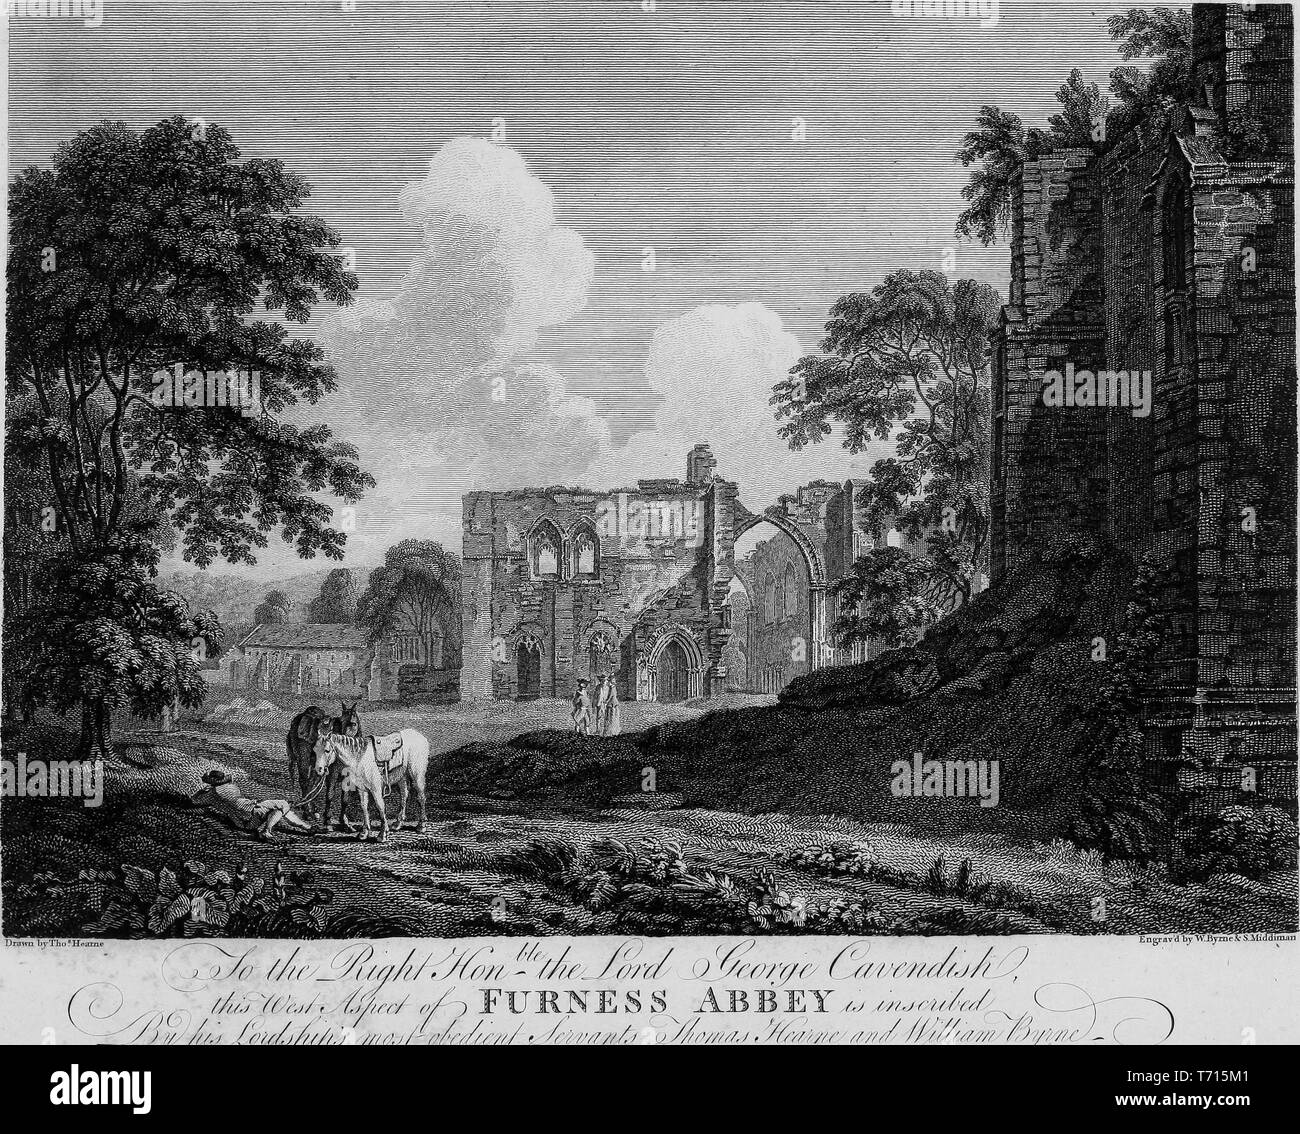 Incisione di rovine di Furness Abbey in Cumbria, Inghilterra, dal libro "Antichità di Gran Bretagna' da William Byrne e Thomas Hearne, 1825. La cortesia Internet Archive. () Foto Stock